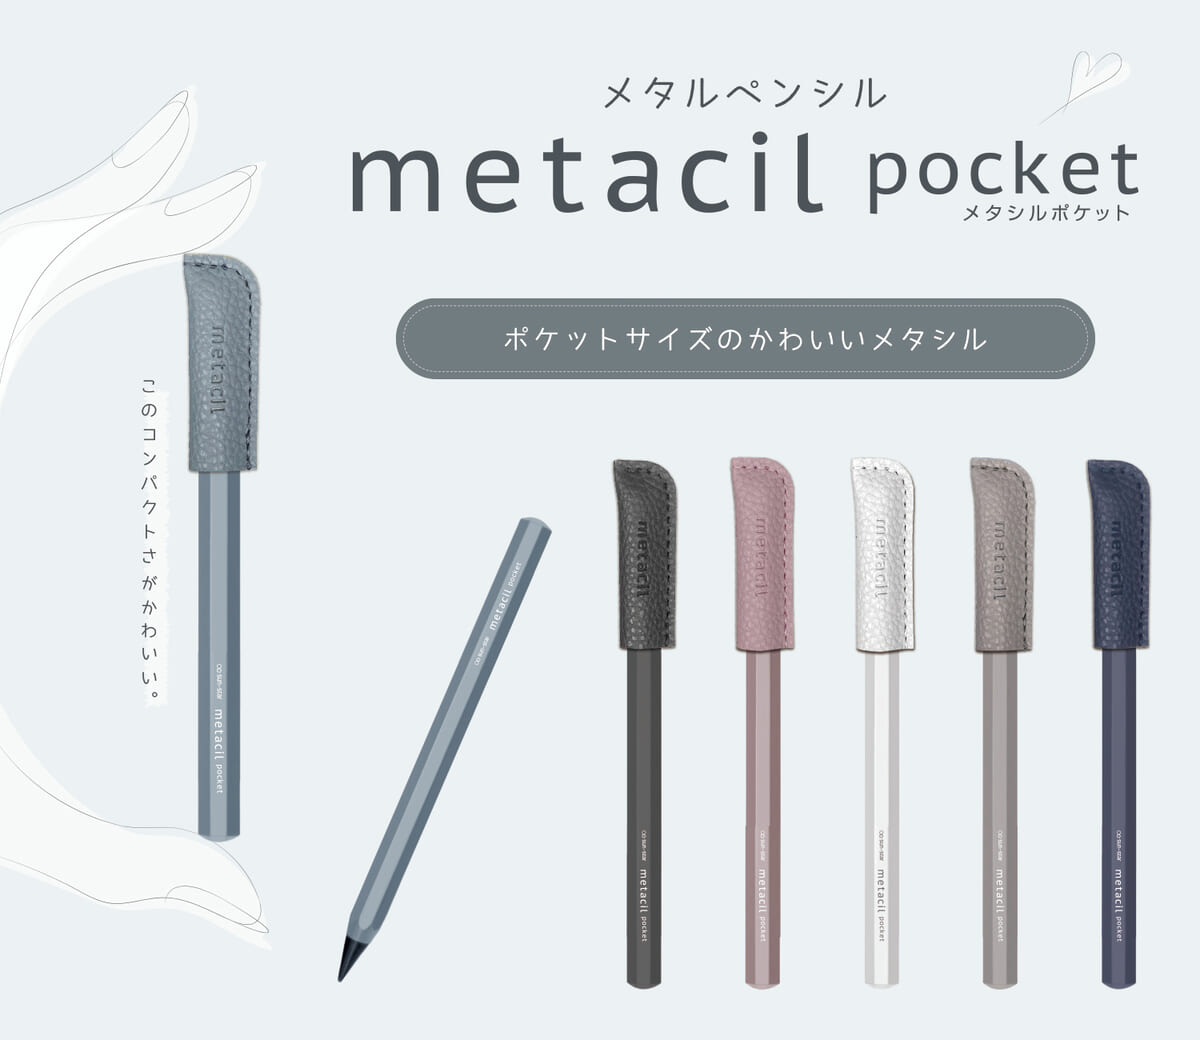 サンスター文具「metacil pocket(メタシルポケット)」